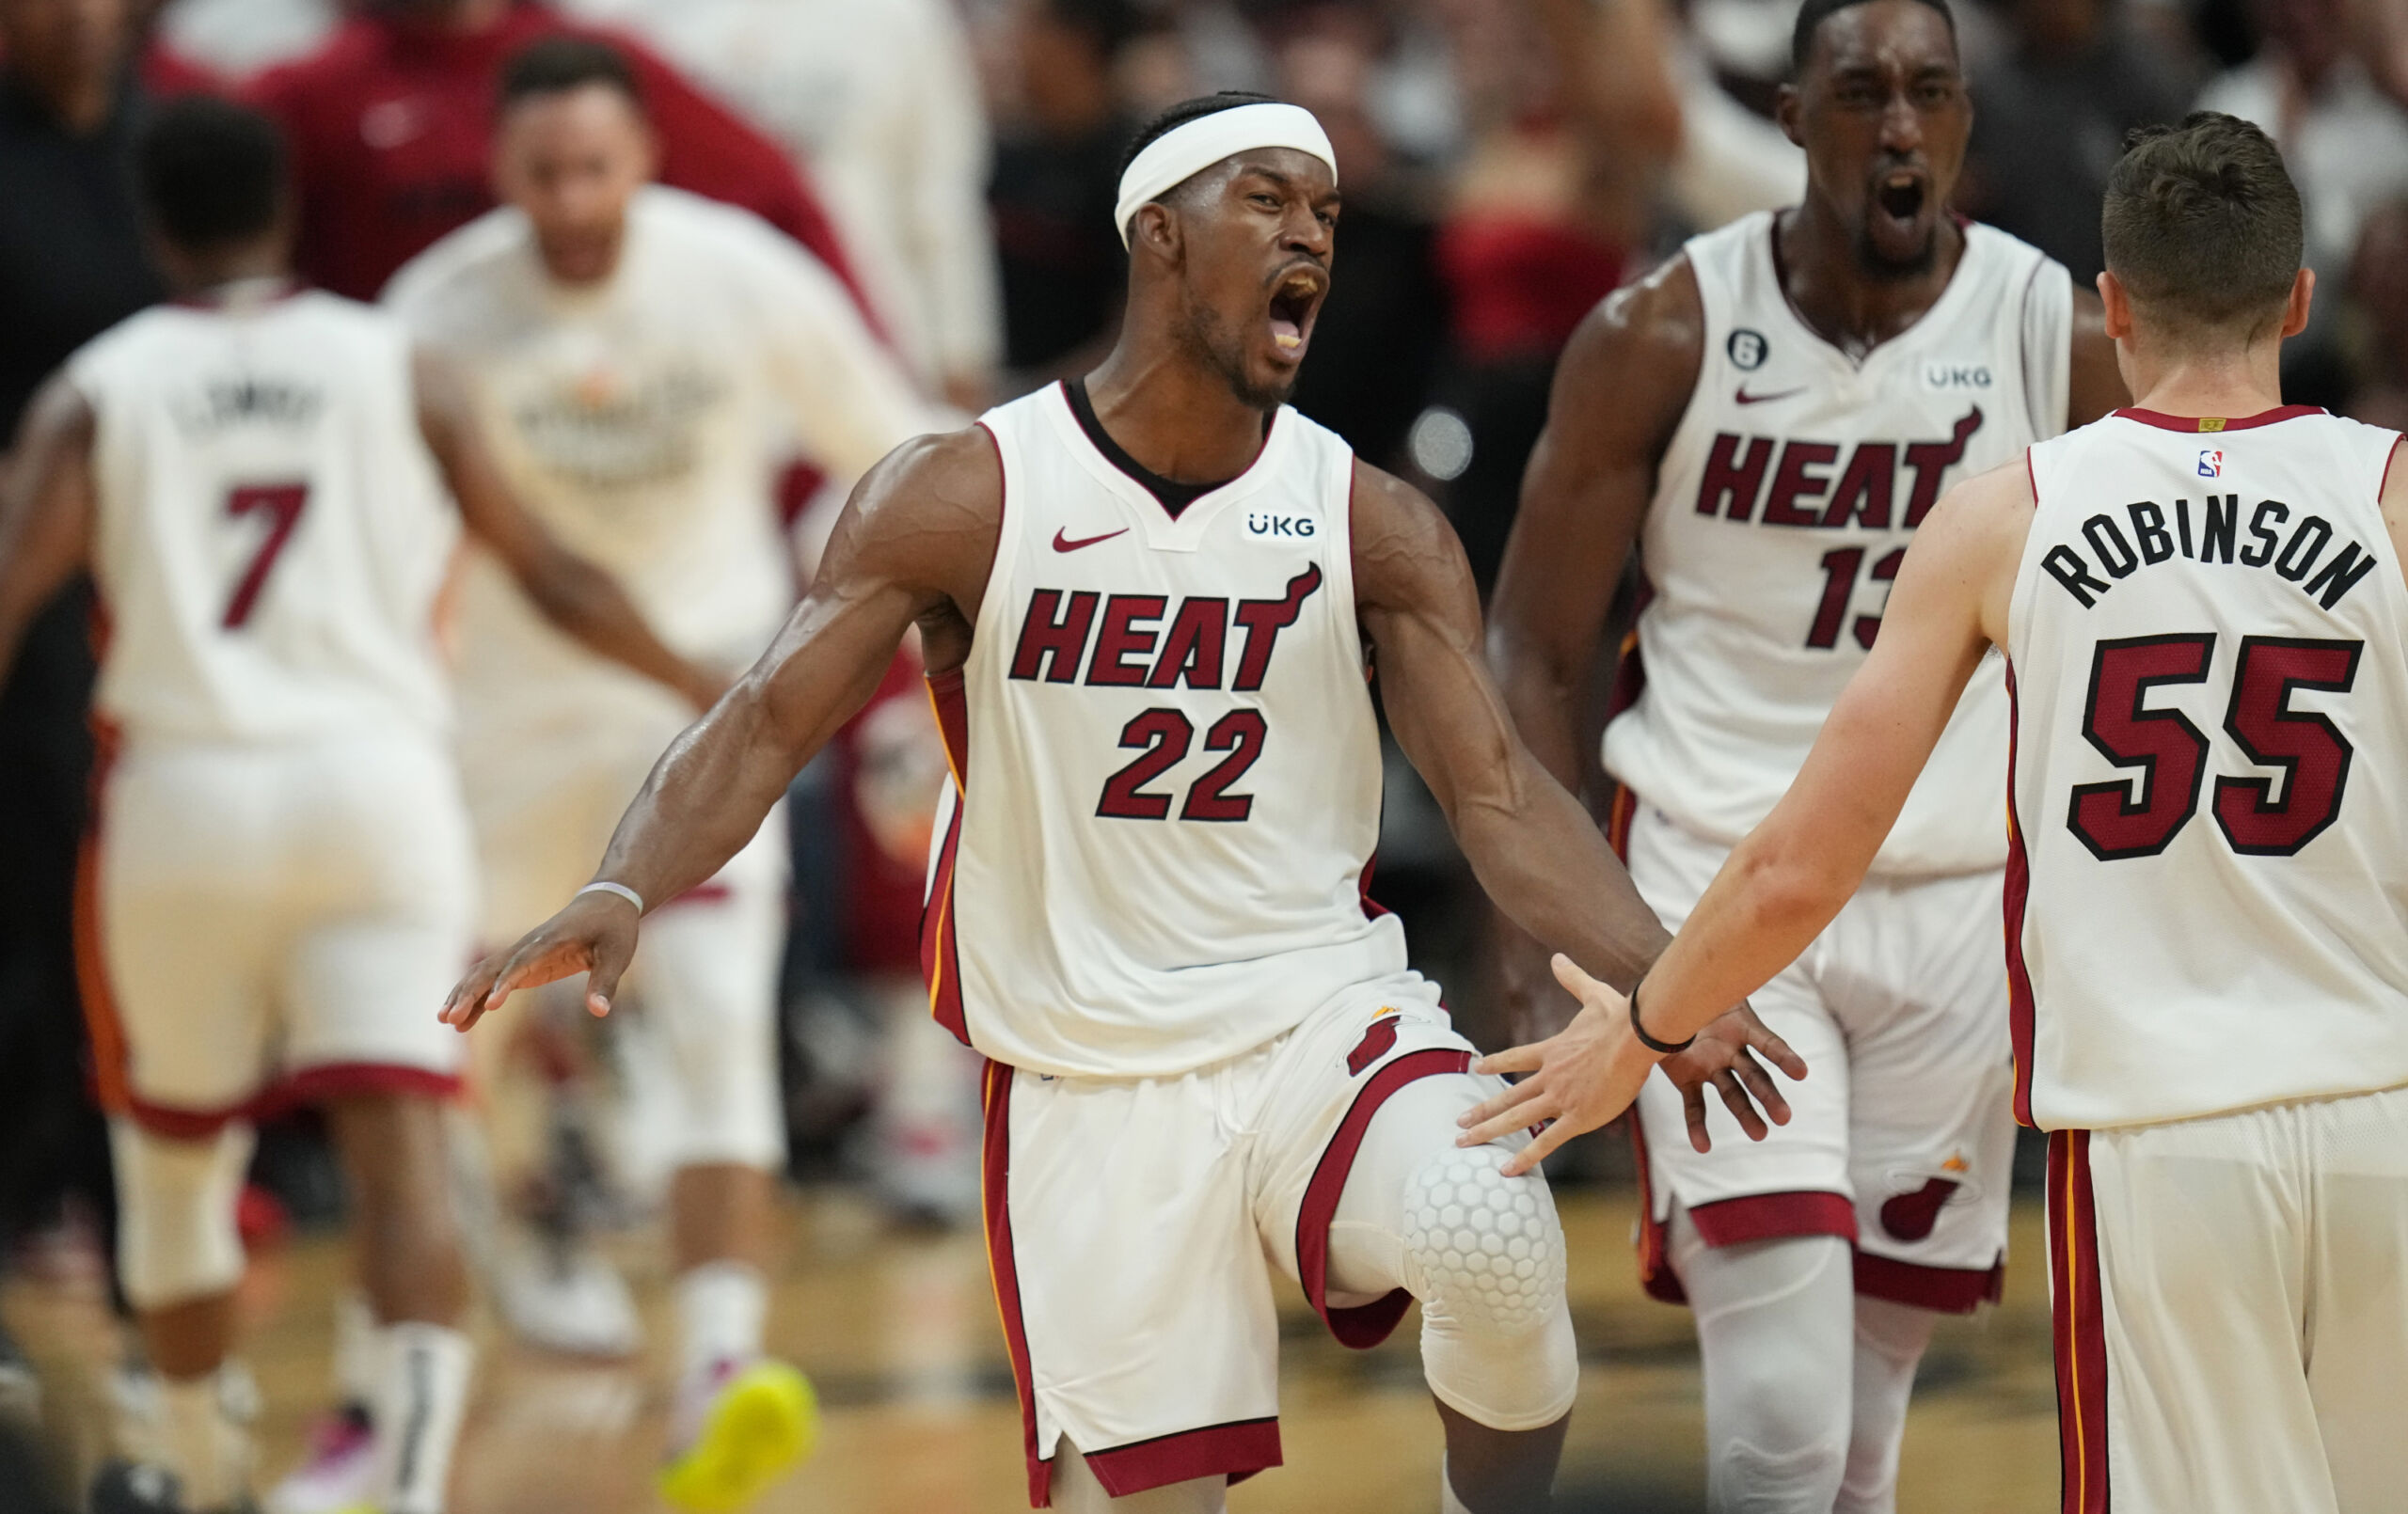 Jimmy Butler drops 56 points in Heat's Game 4 win vs. Bucks